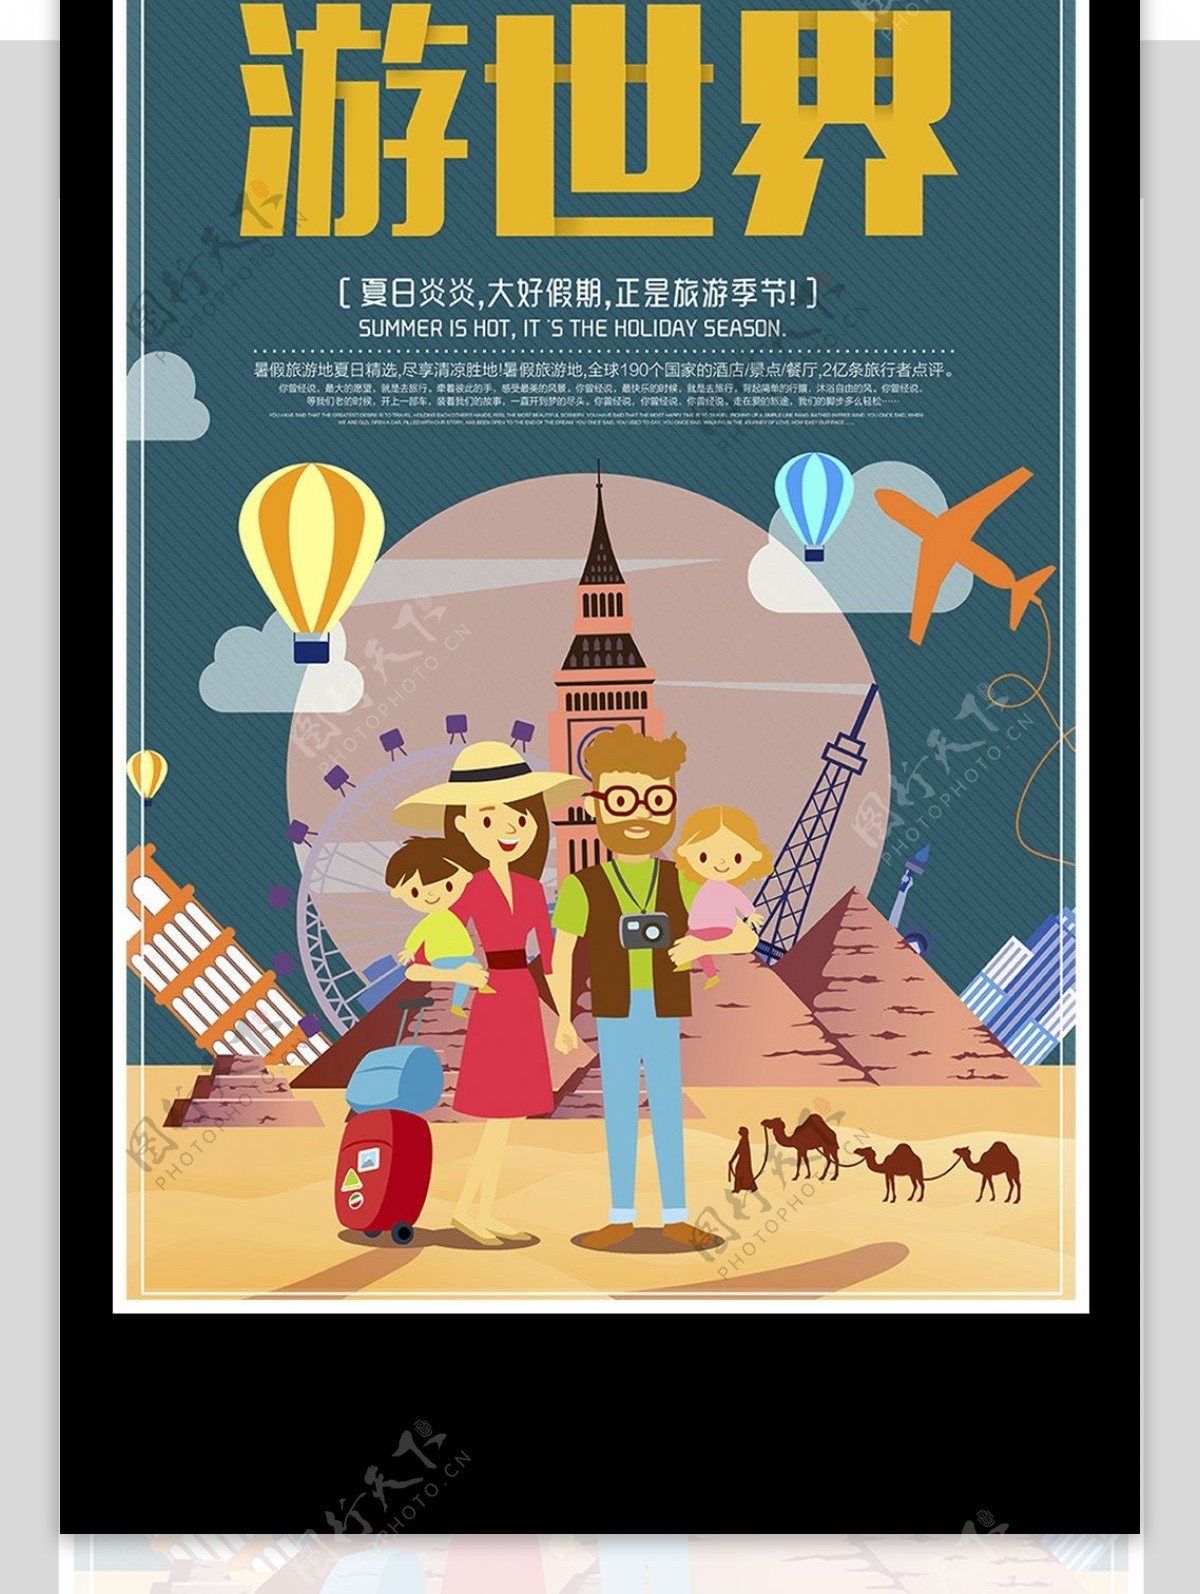 游世界旅游宣传海报